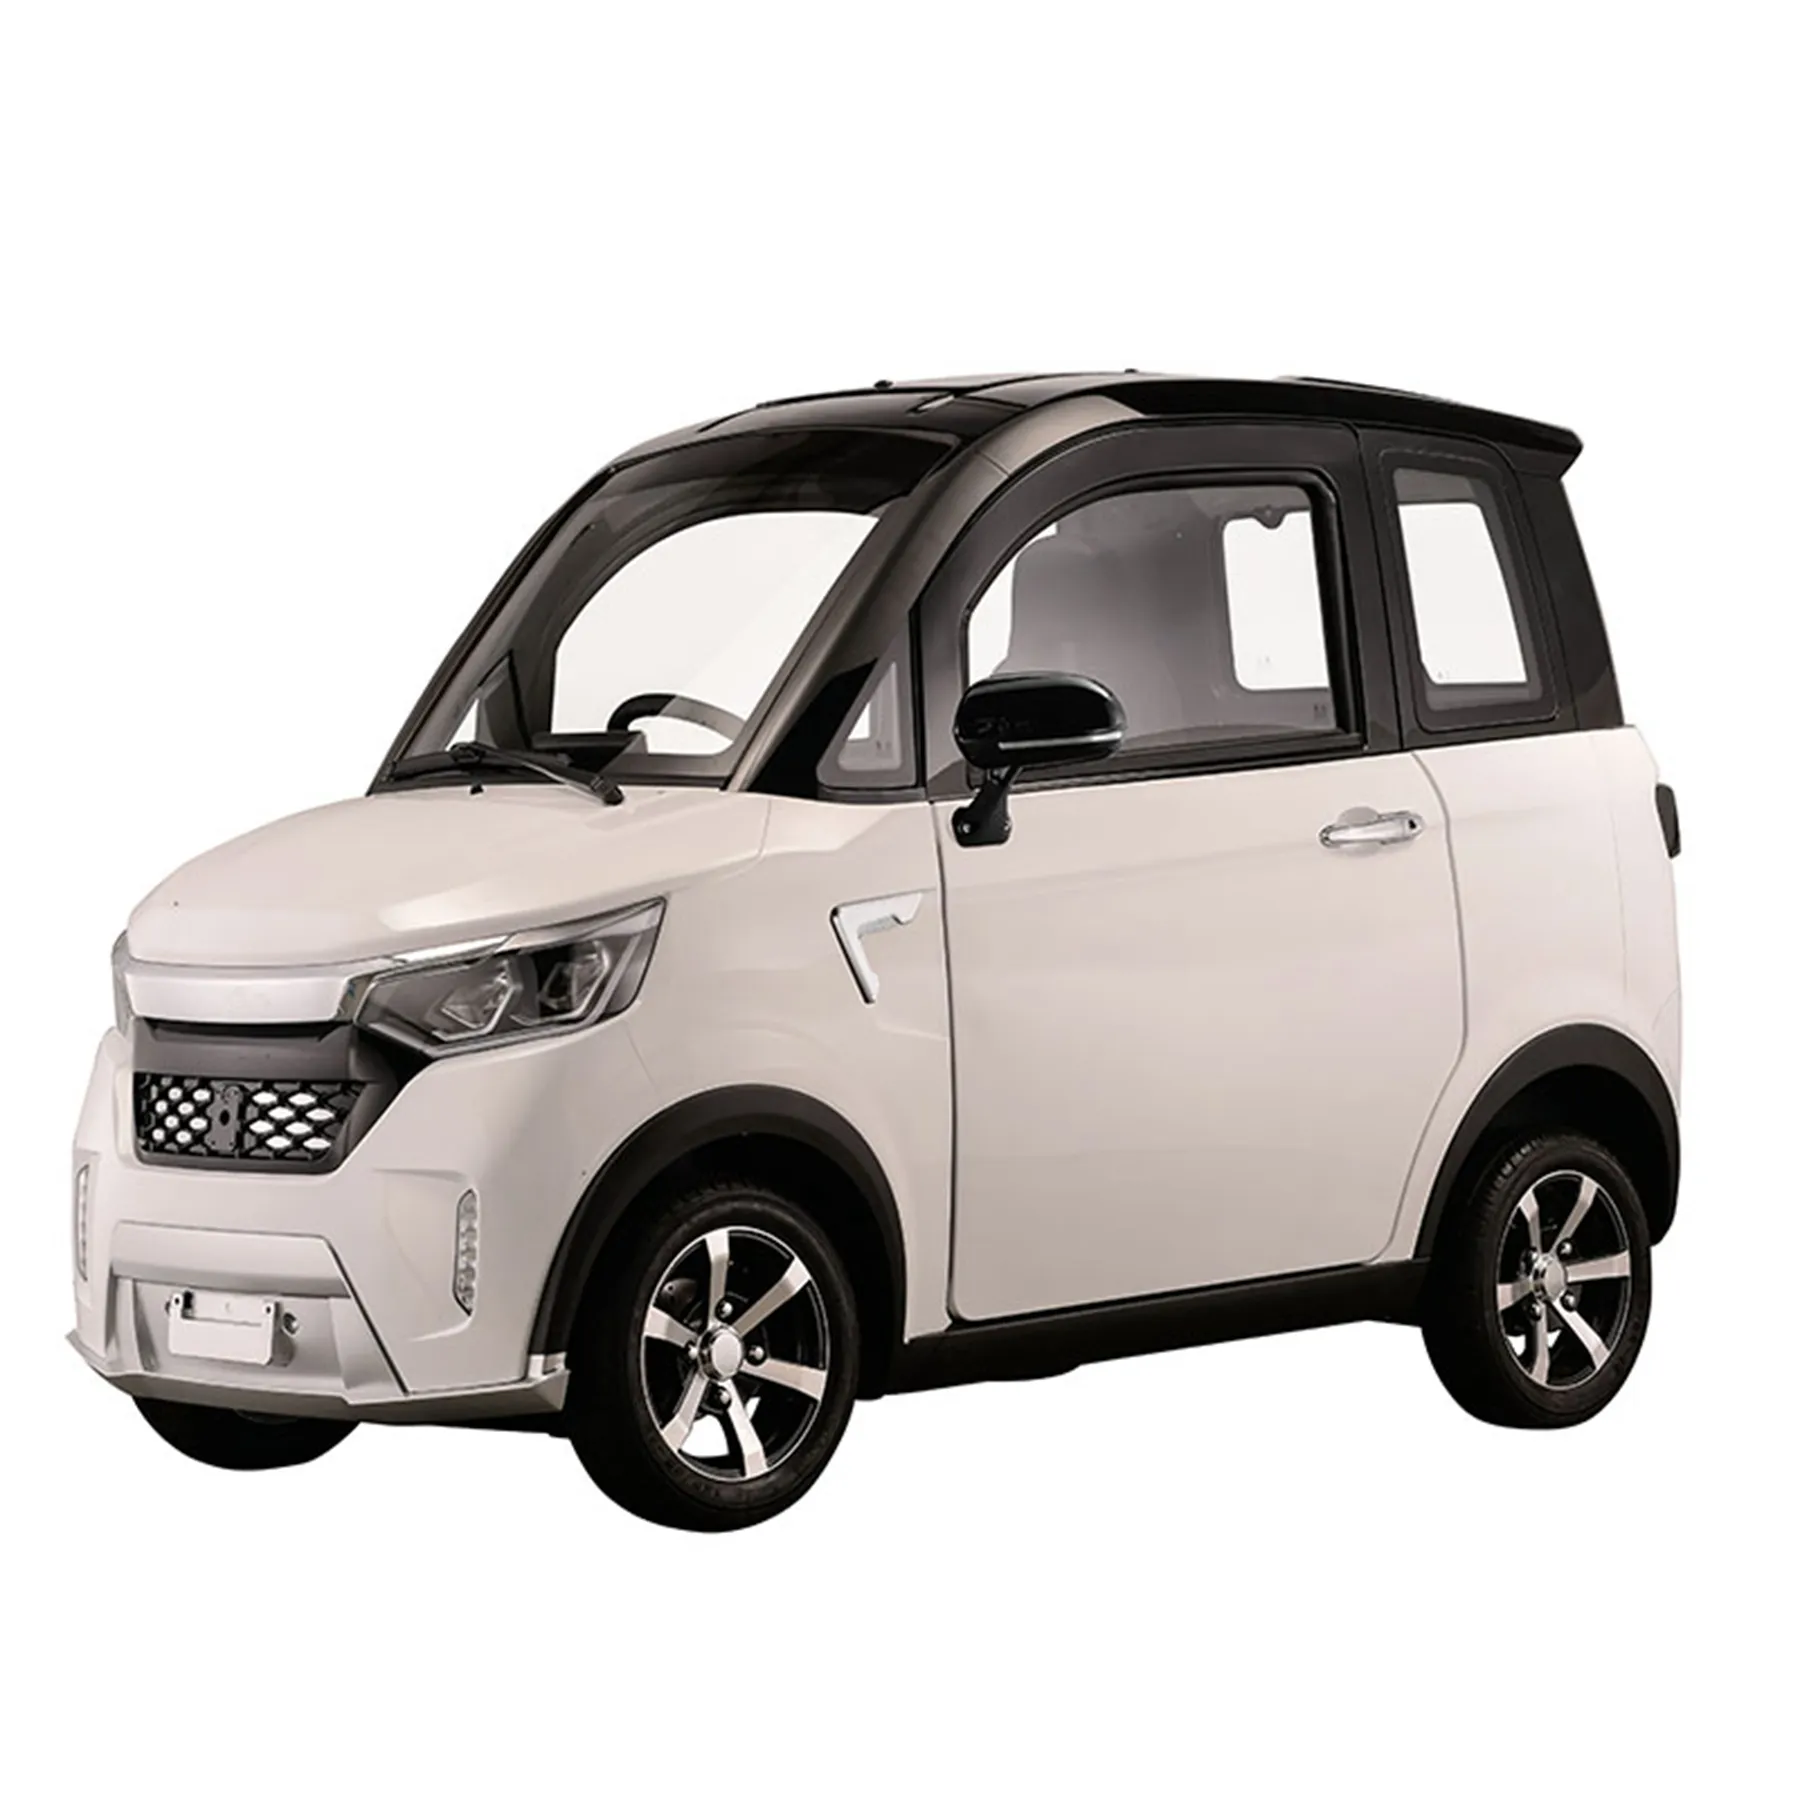 ELION A2c elétrico mini CEE carros China importação carro esportivo elétrico preço à venda